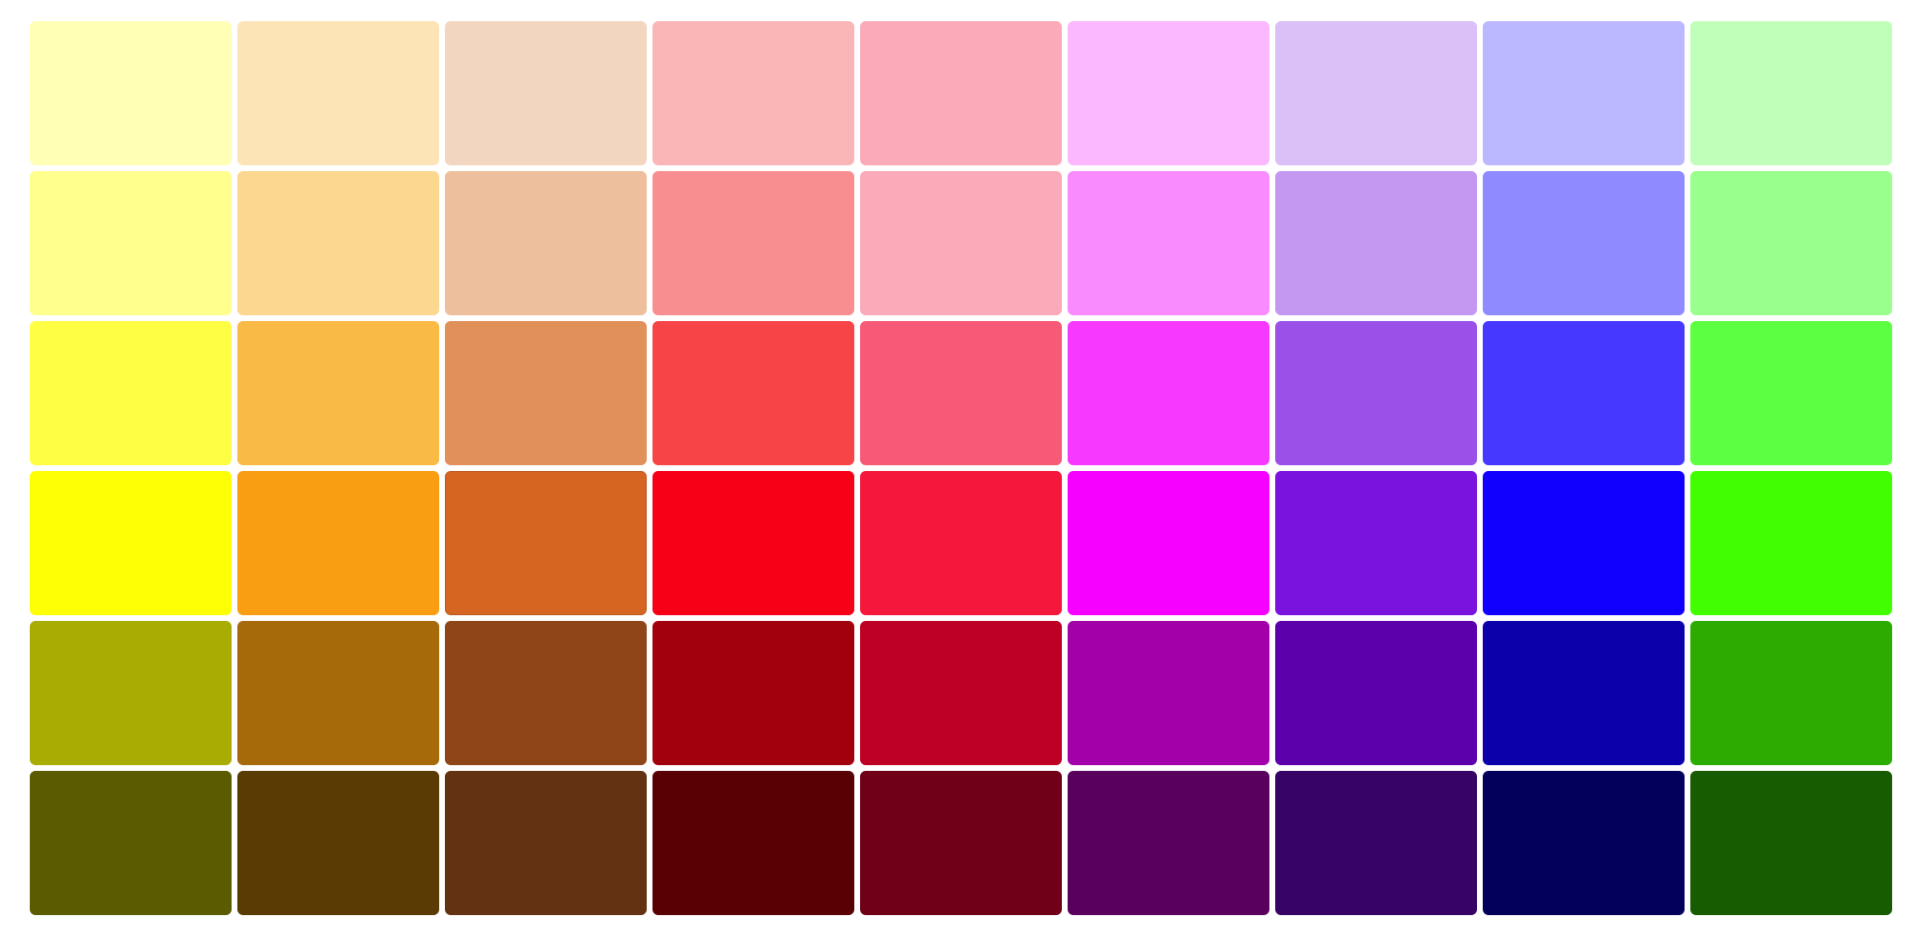 Color Palette Generator: Make Color Palette From Image